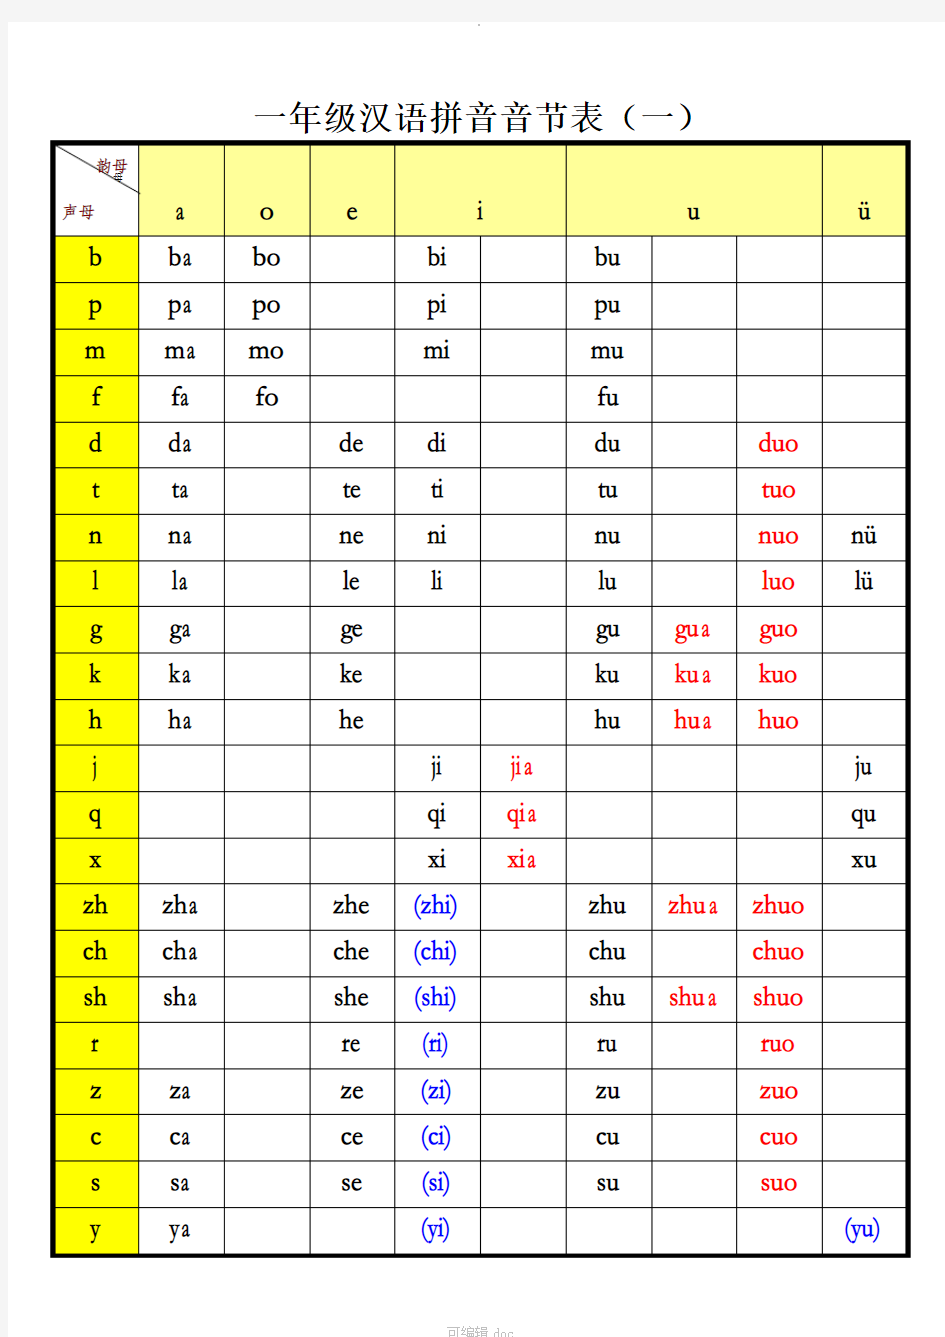 一年级汉语拼音音节表(完整版)